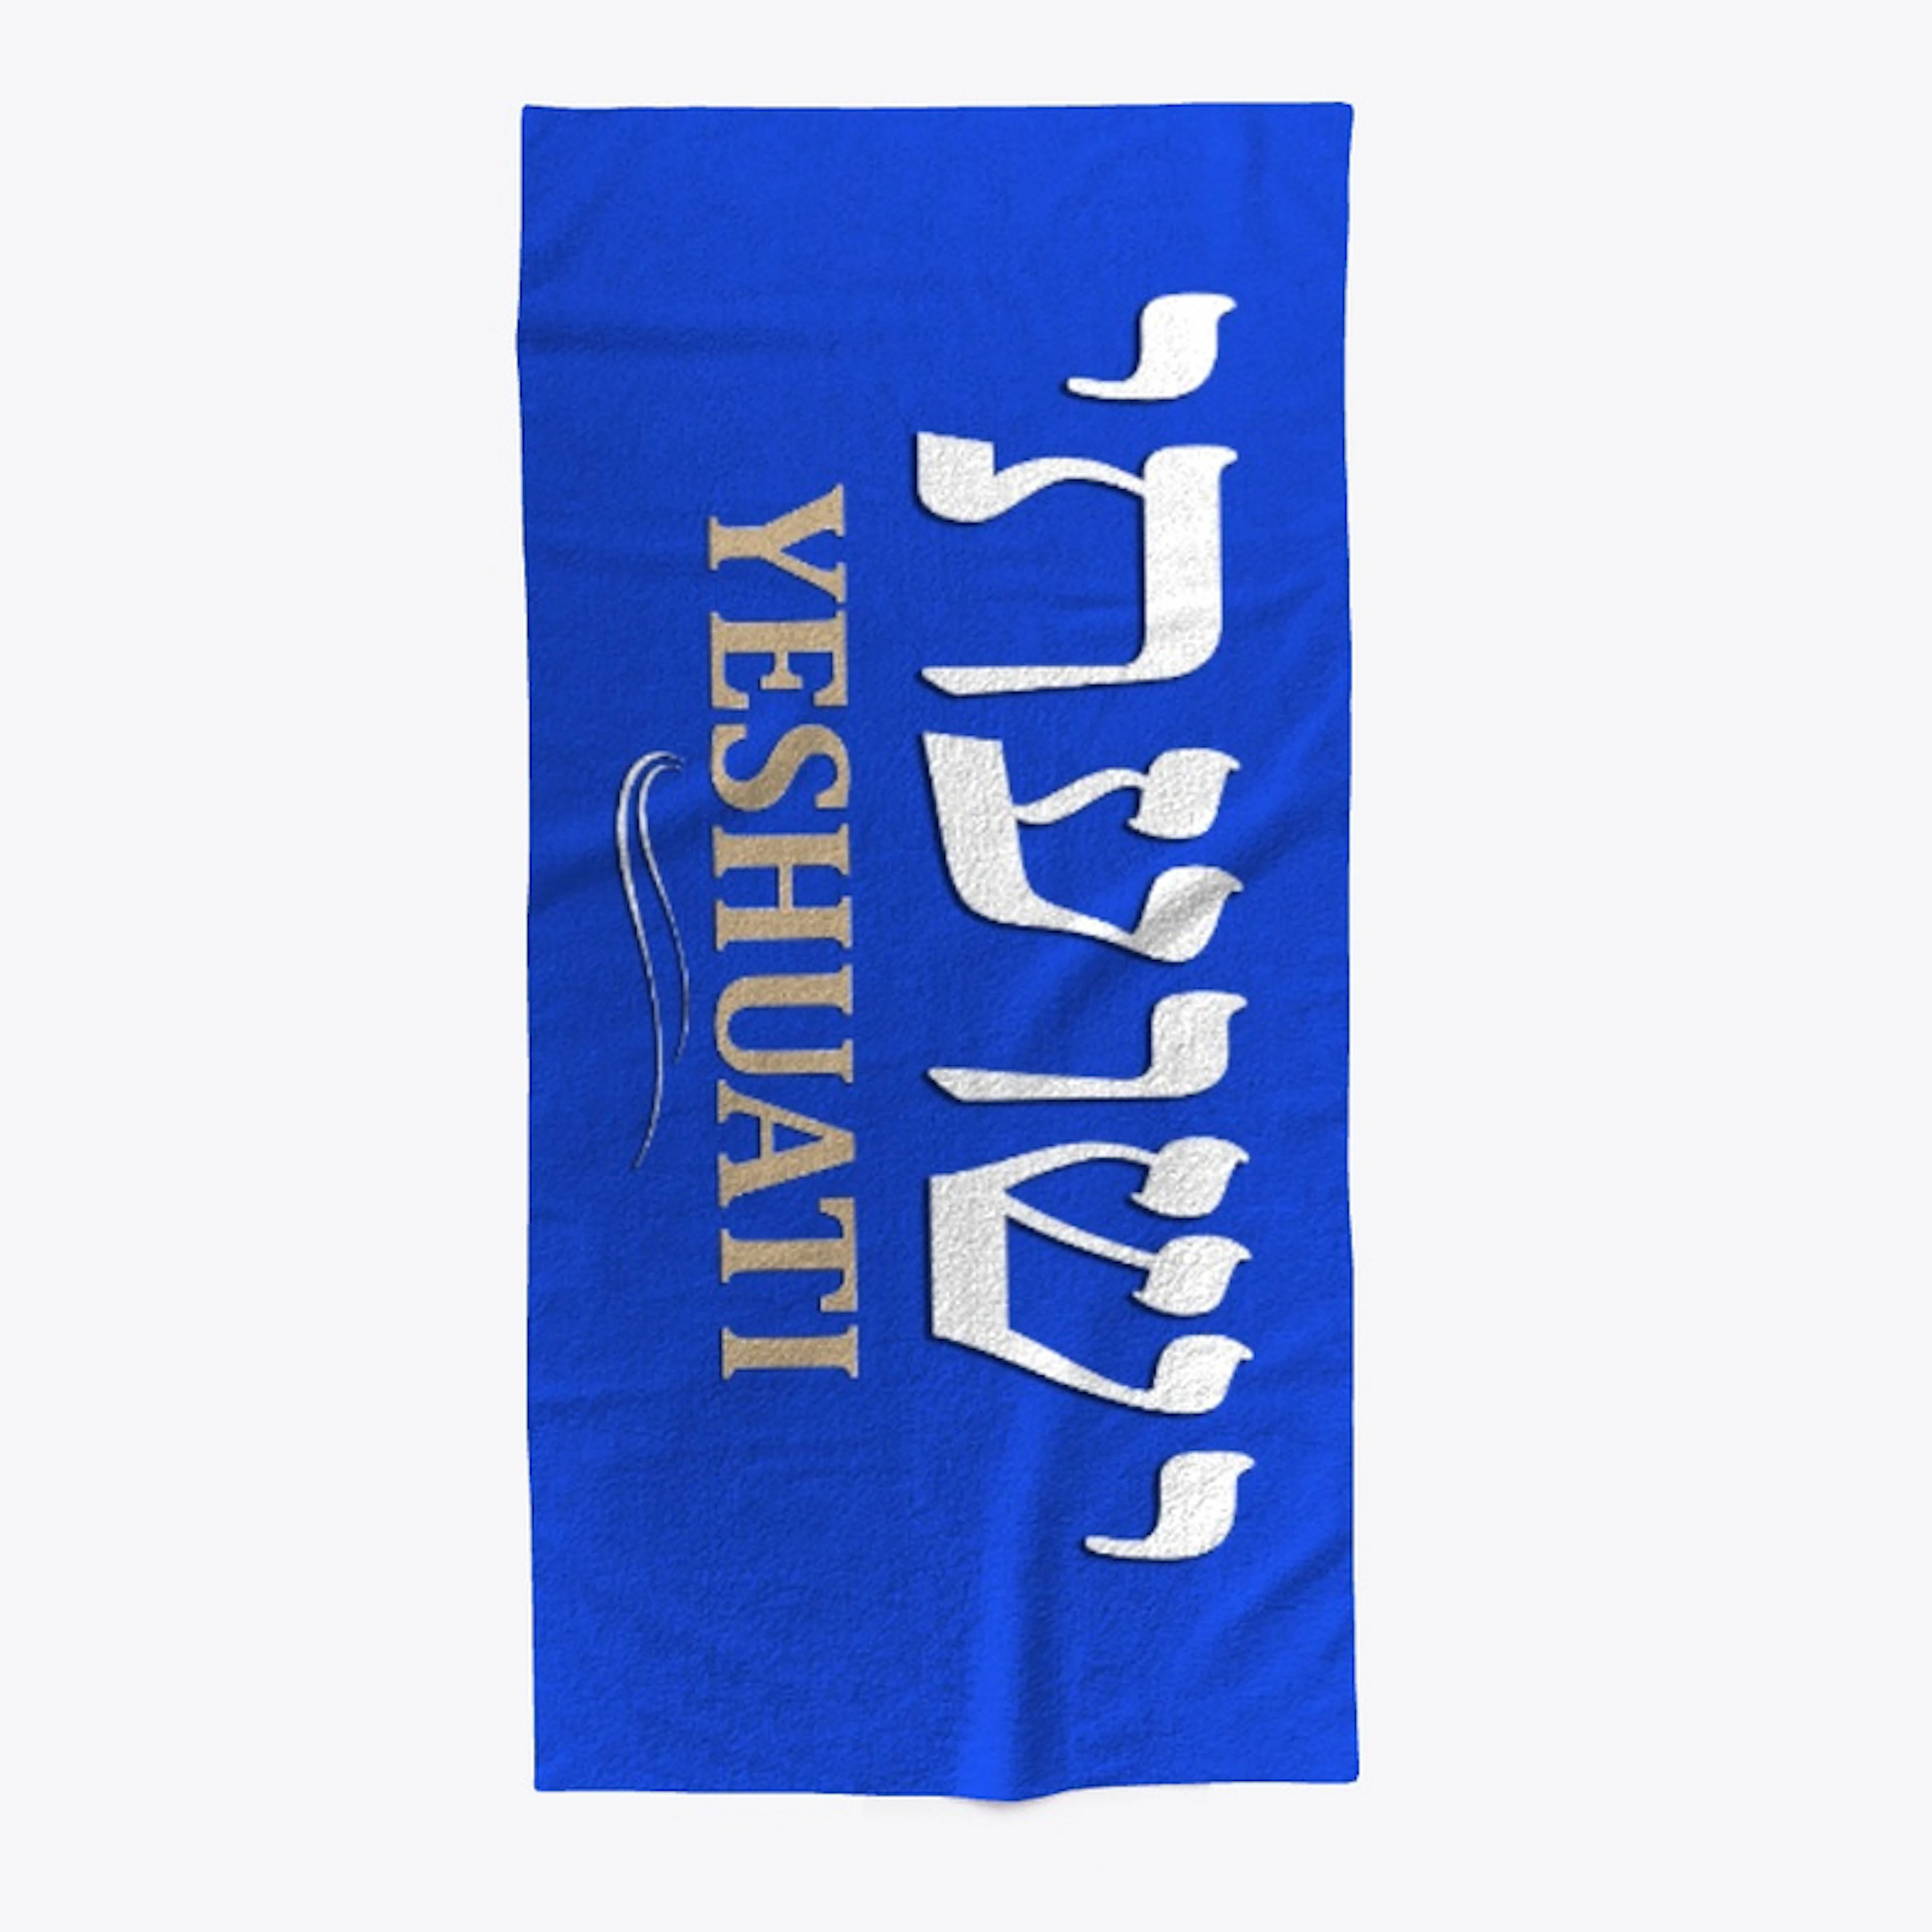 YESHUATI (My Salvation) Hebrew -Towel